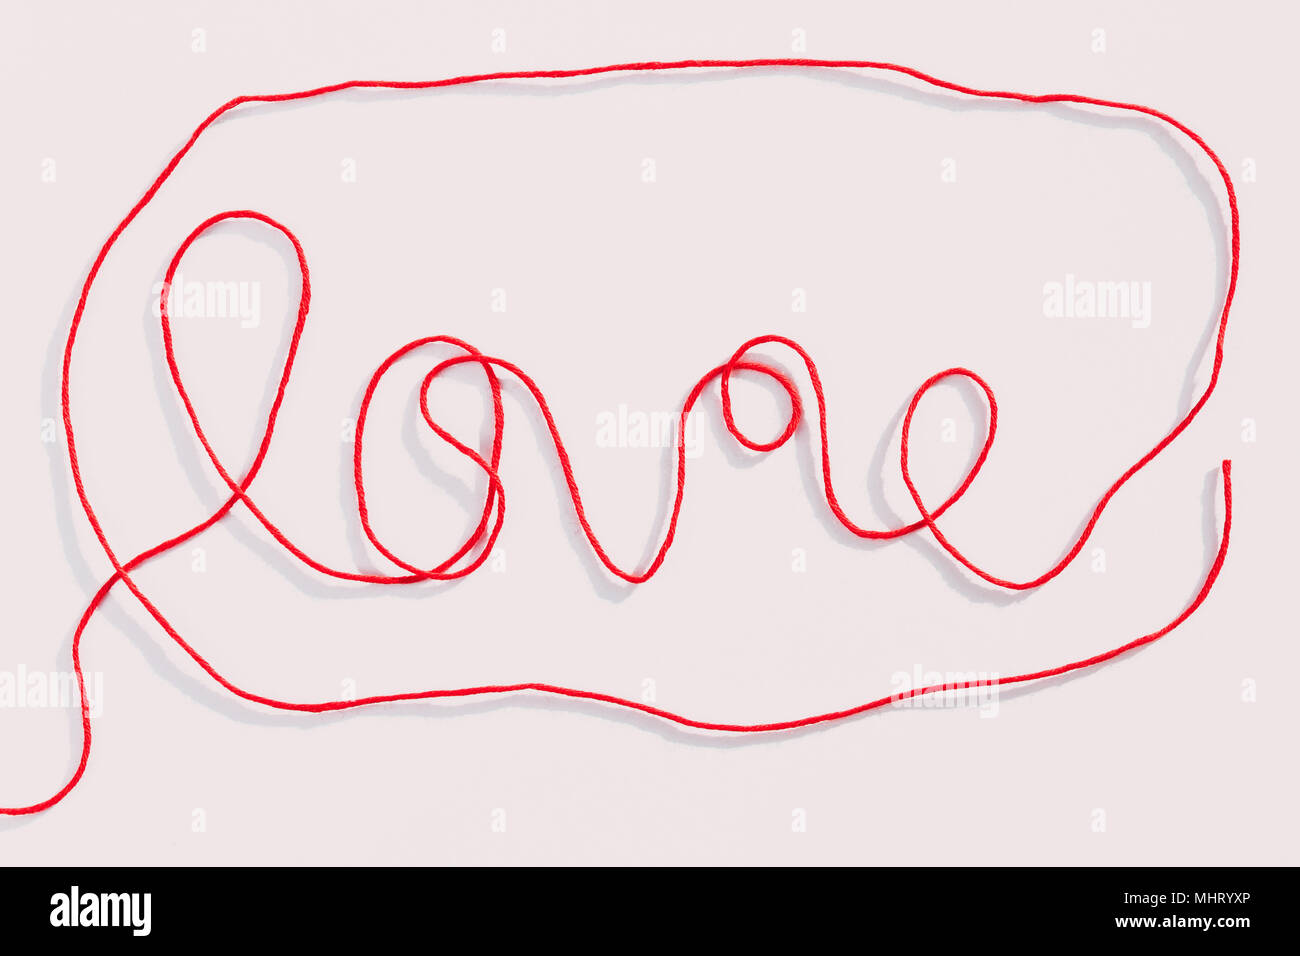 Wort Liebe mit roten Wollfäden auf weißem Hintergrund geschrieben. Horizontale Ansicht. Stockfoto